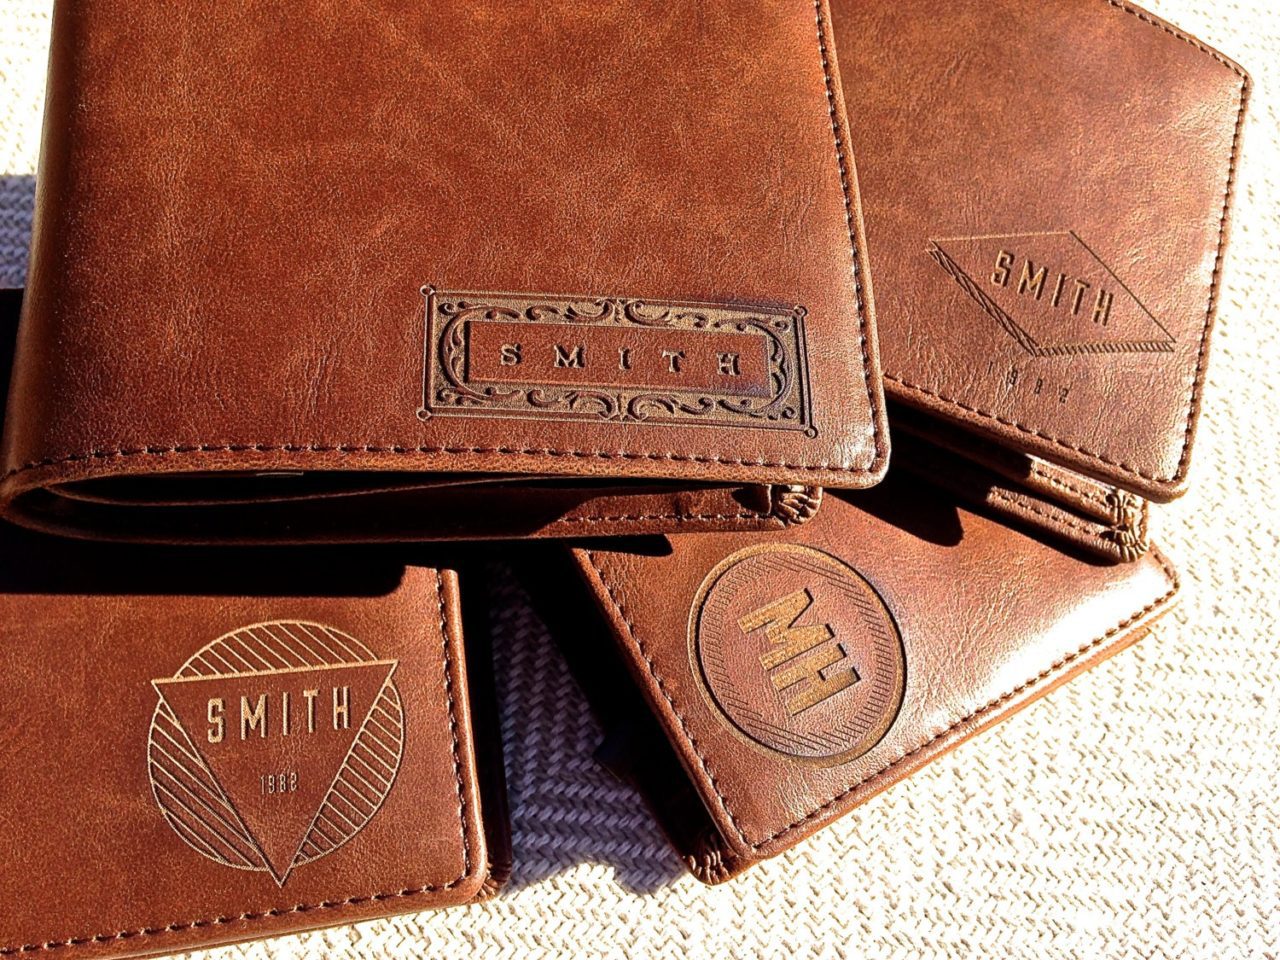 Groomsmen Gift Ideas - leather wallet